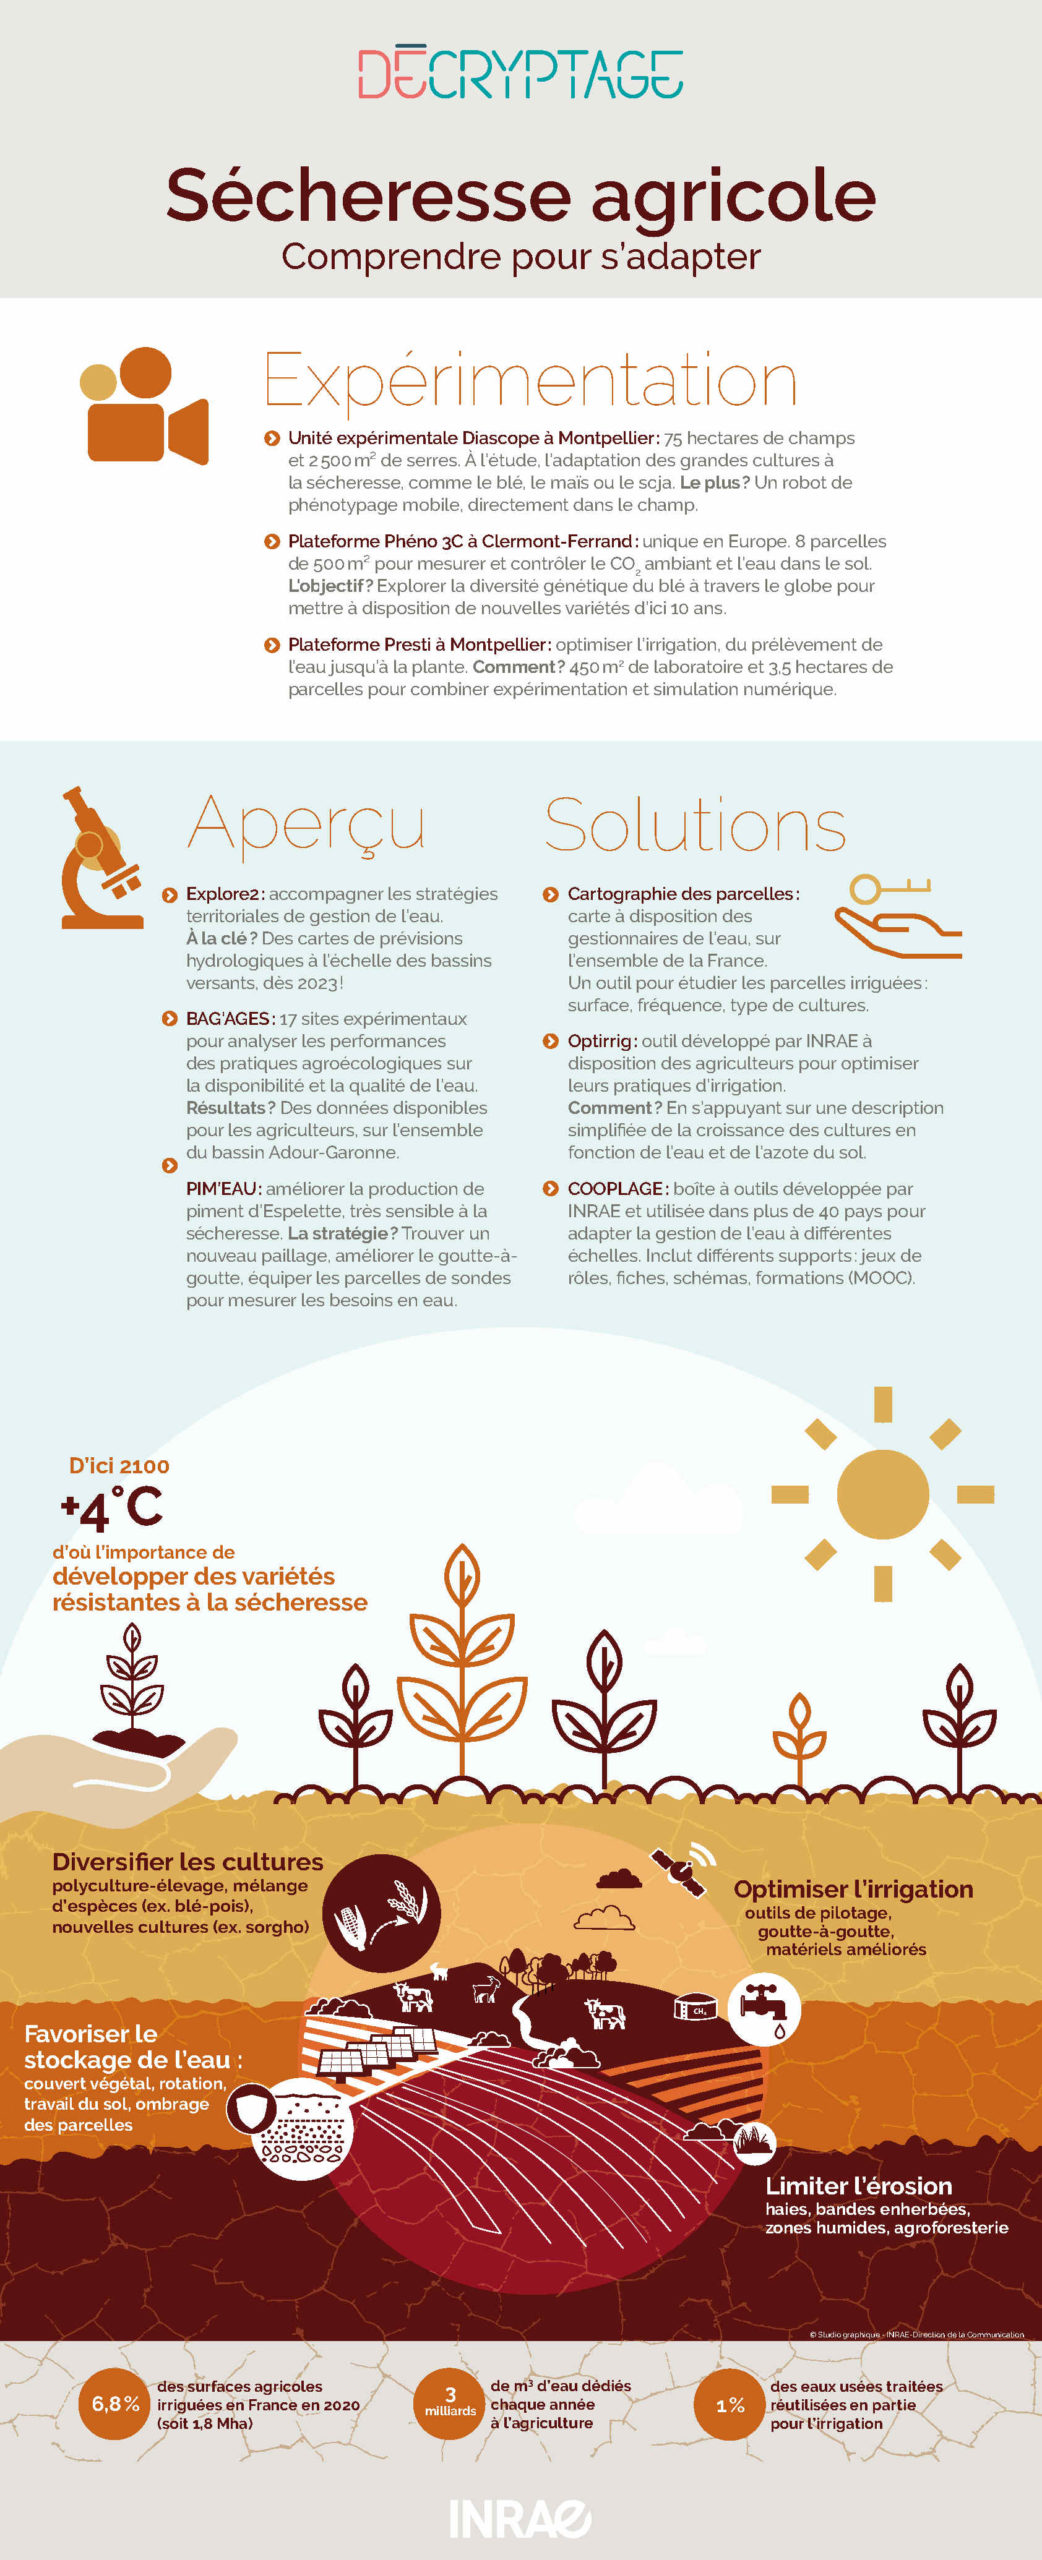 Sécheresse agricole en France : projets, expérimentations et solutions INRAE